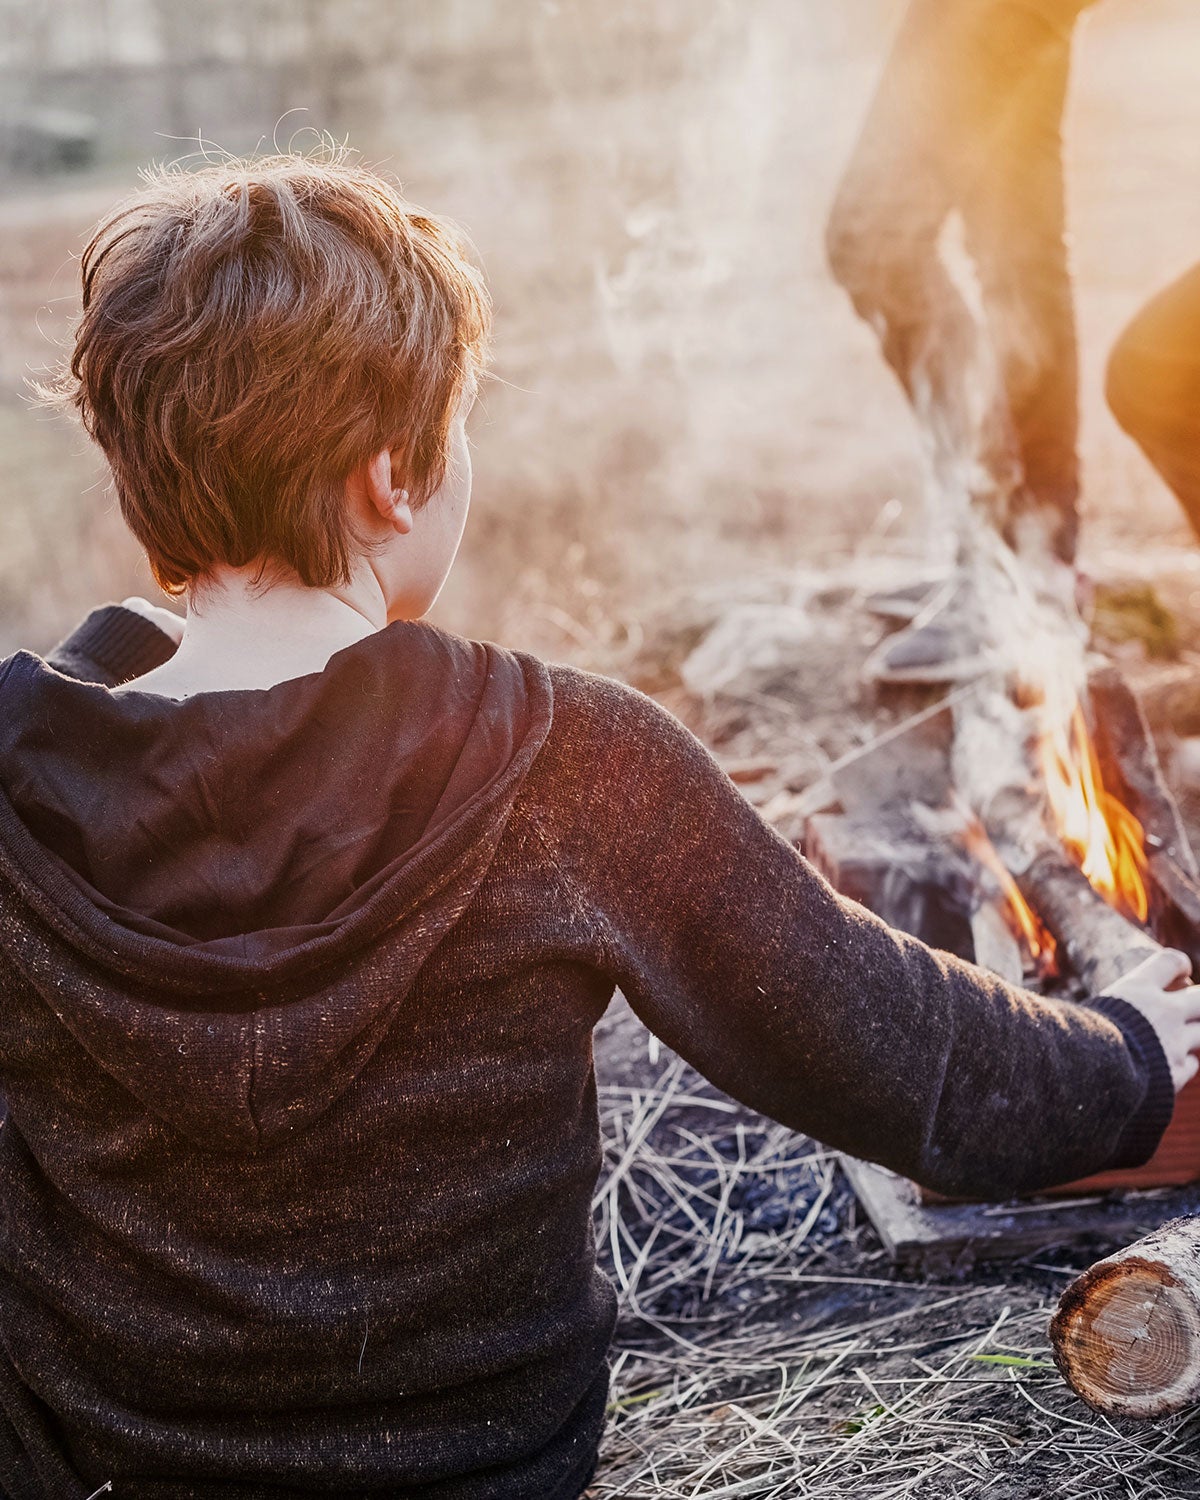 Boy tending a campfire